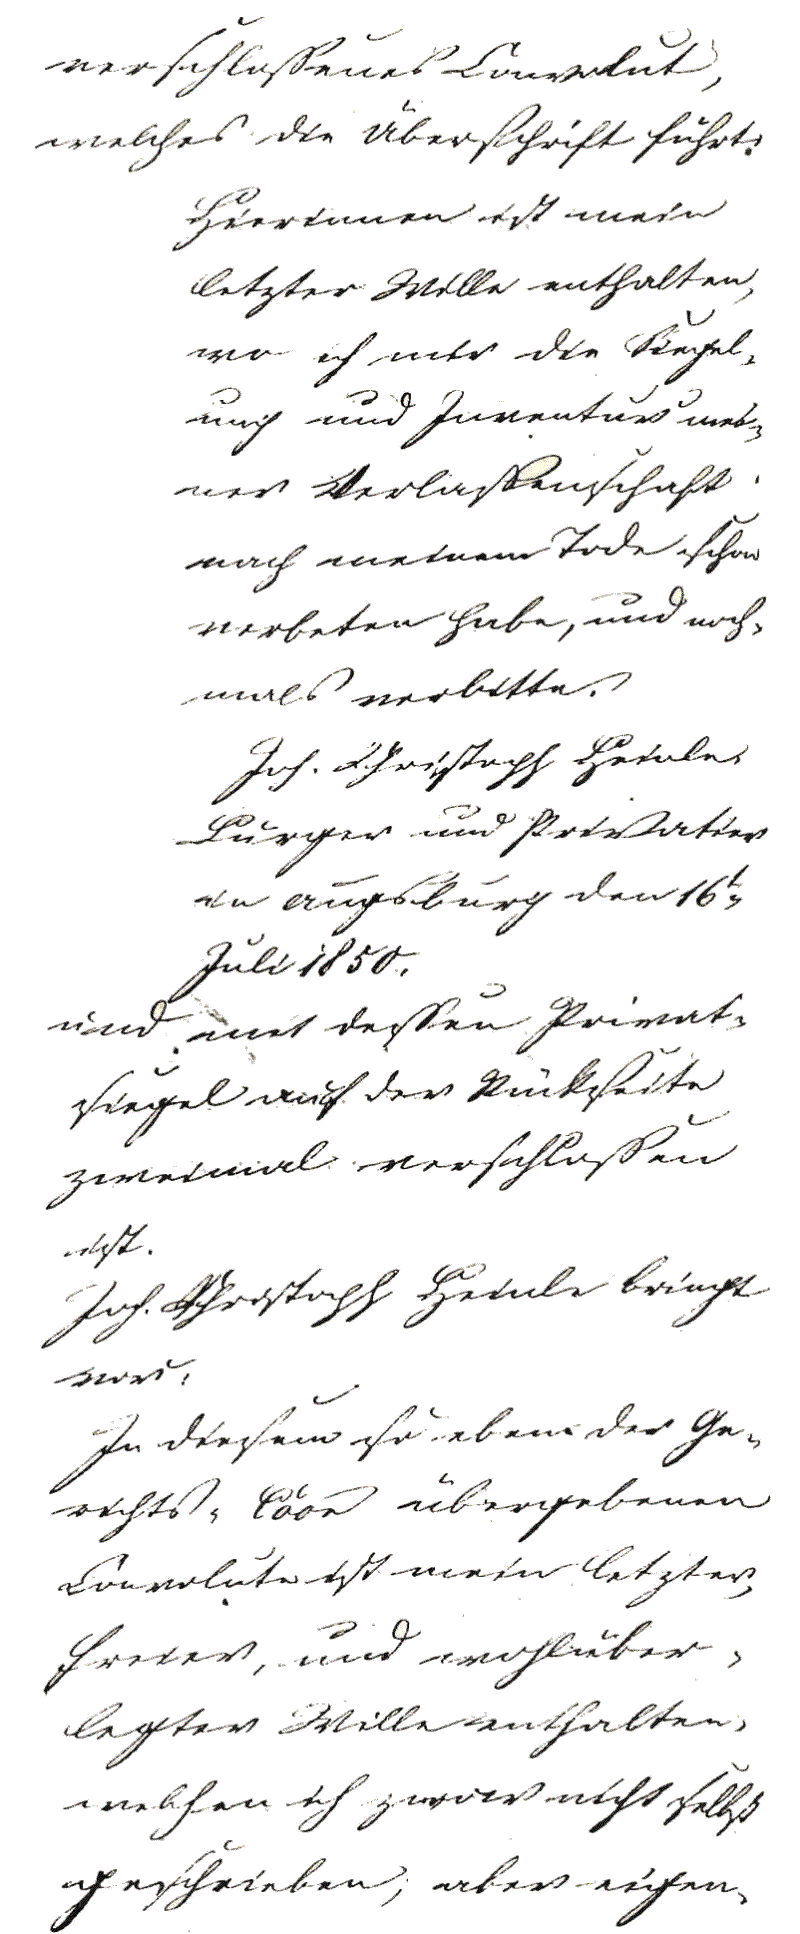 Letztwillige Verfügung von Johann Christoph Heinle, 16. Juli 1850